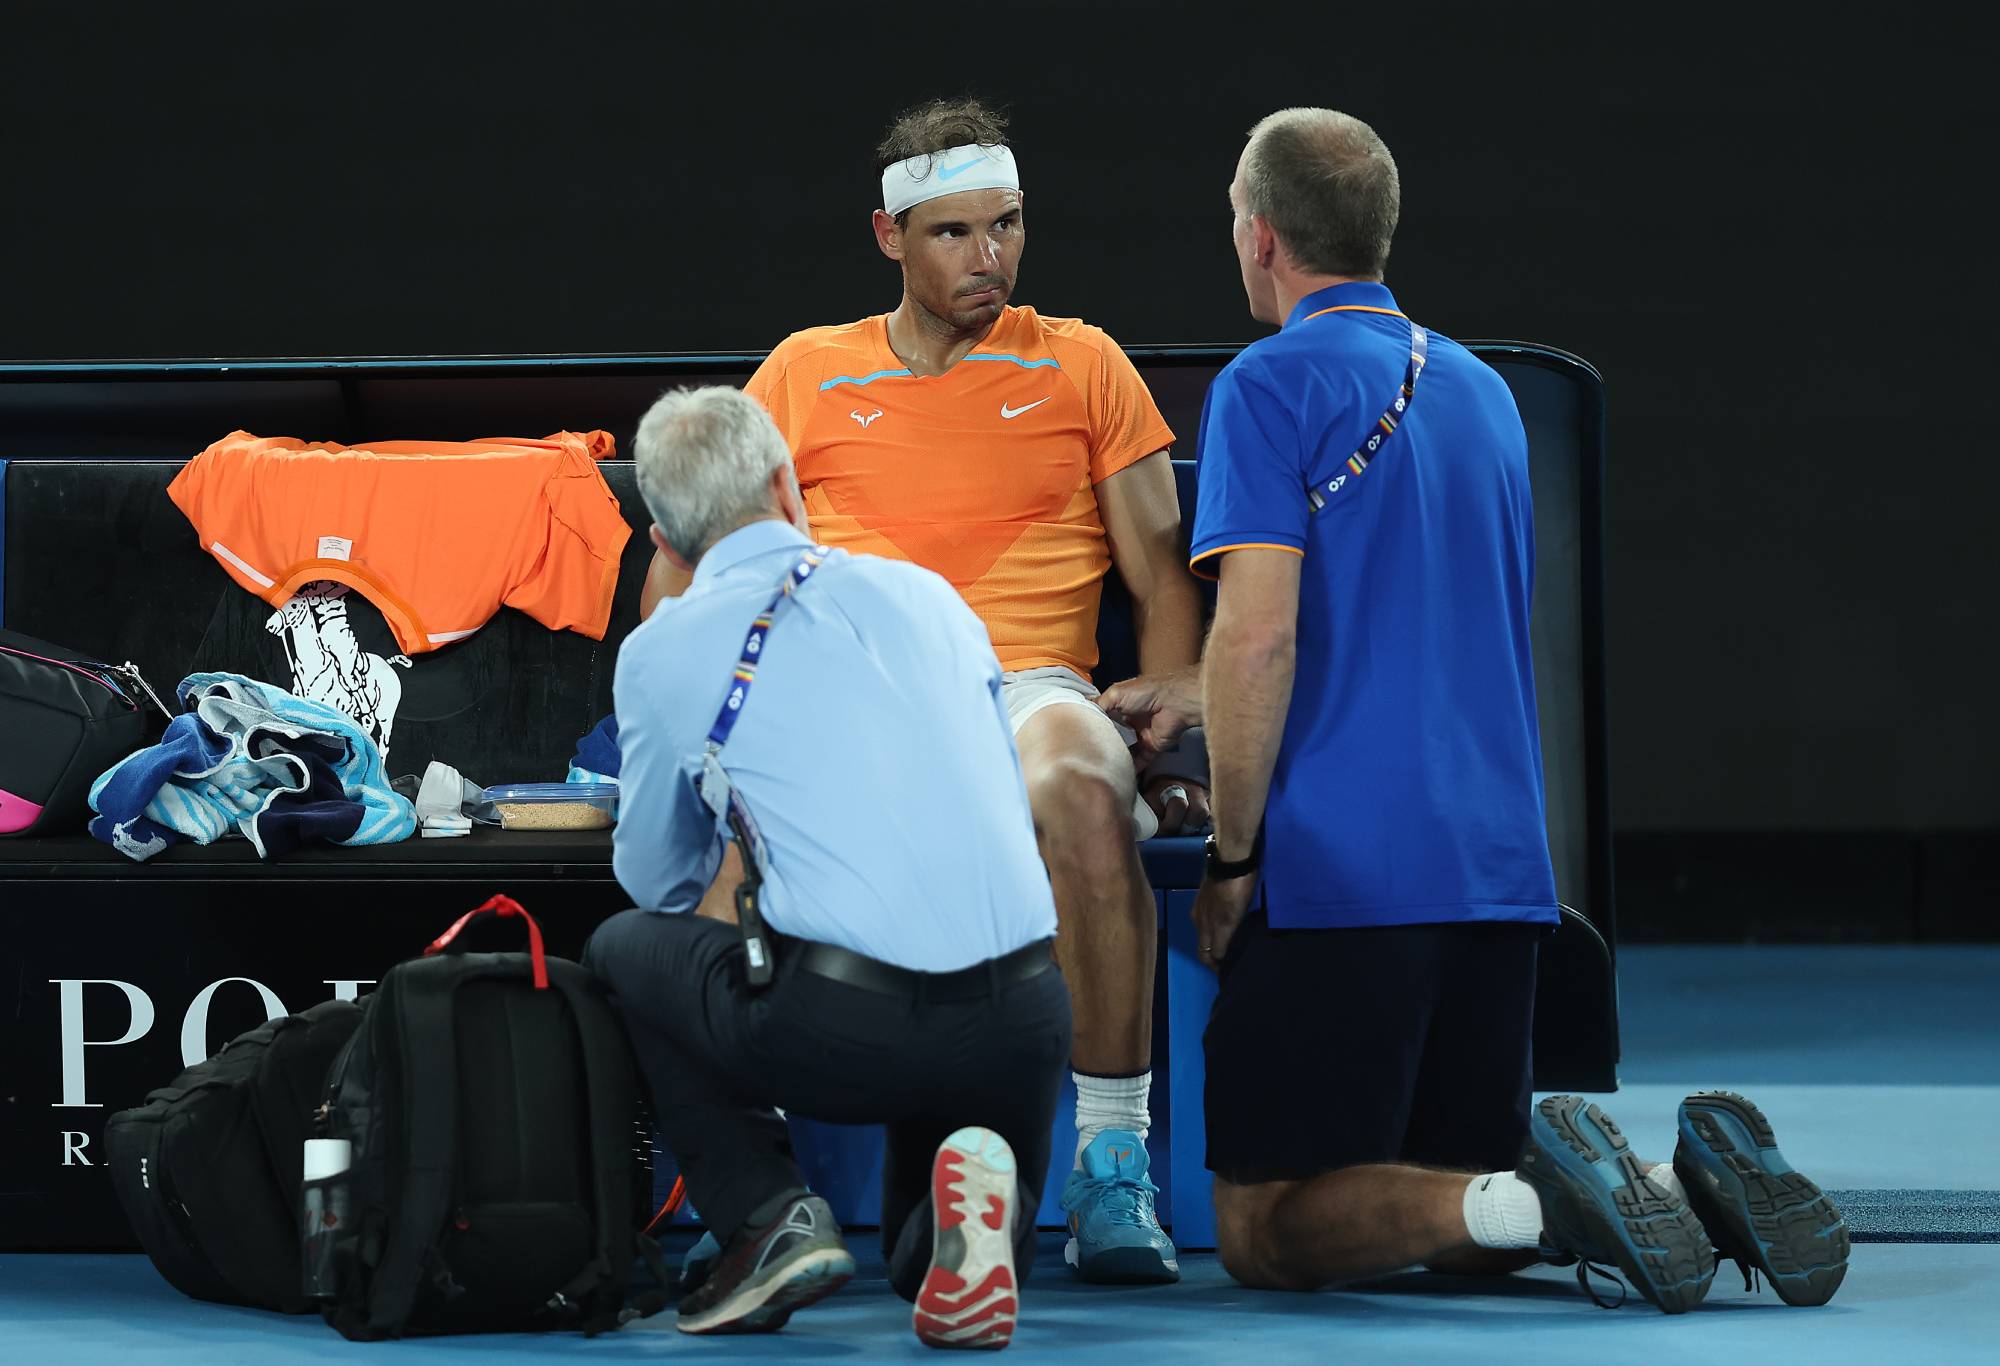 Poin Pembicaraan: Tidak mungkin Nadal harus melepaskan raket tenis